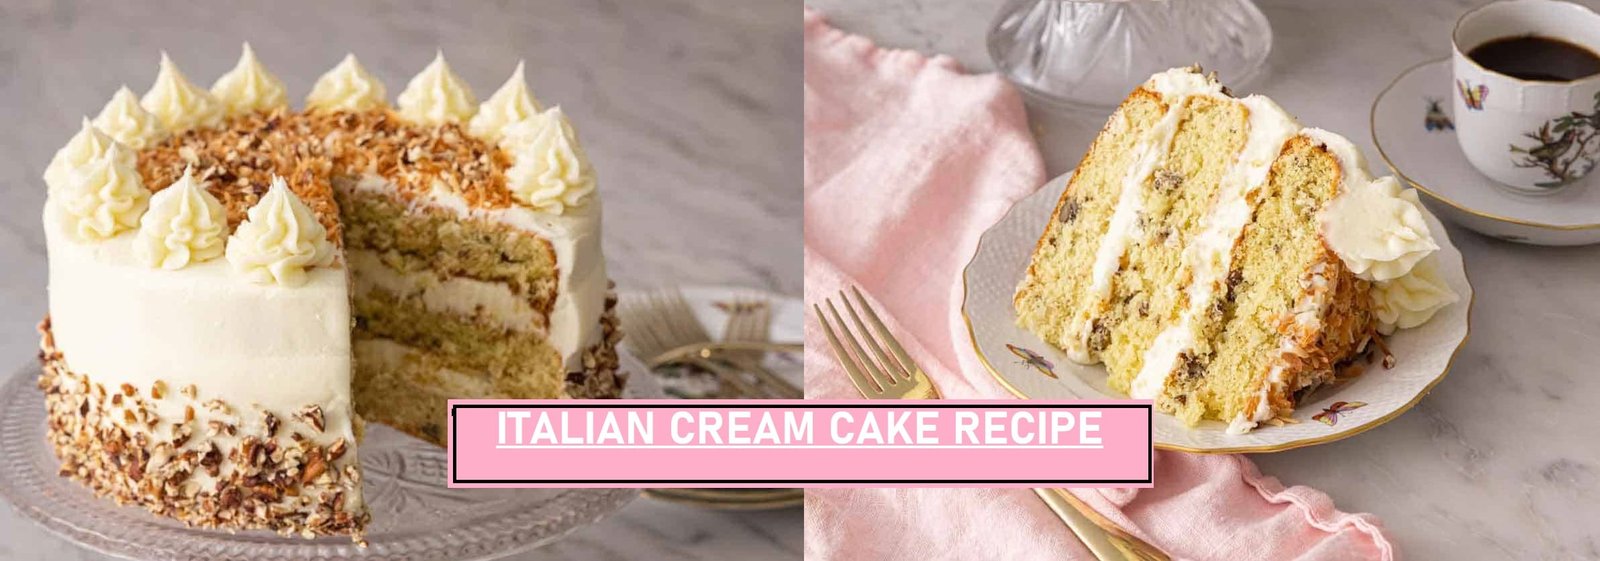 ITALIAN CREAM CAKE RECIPE